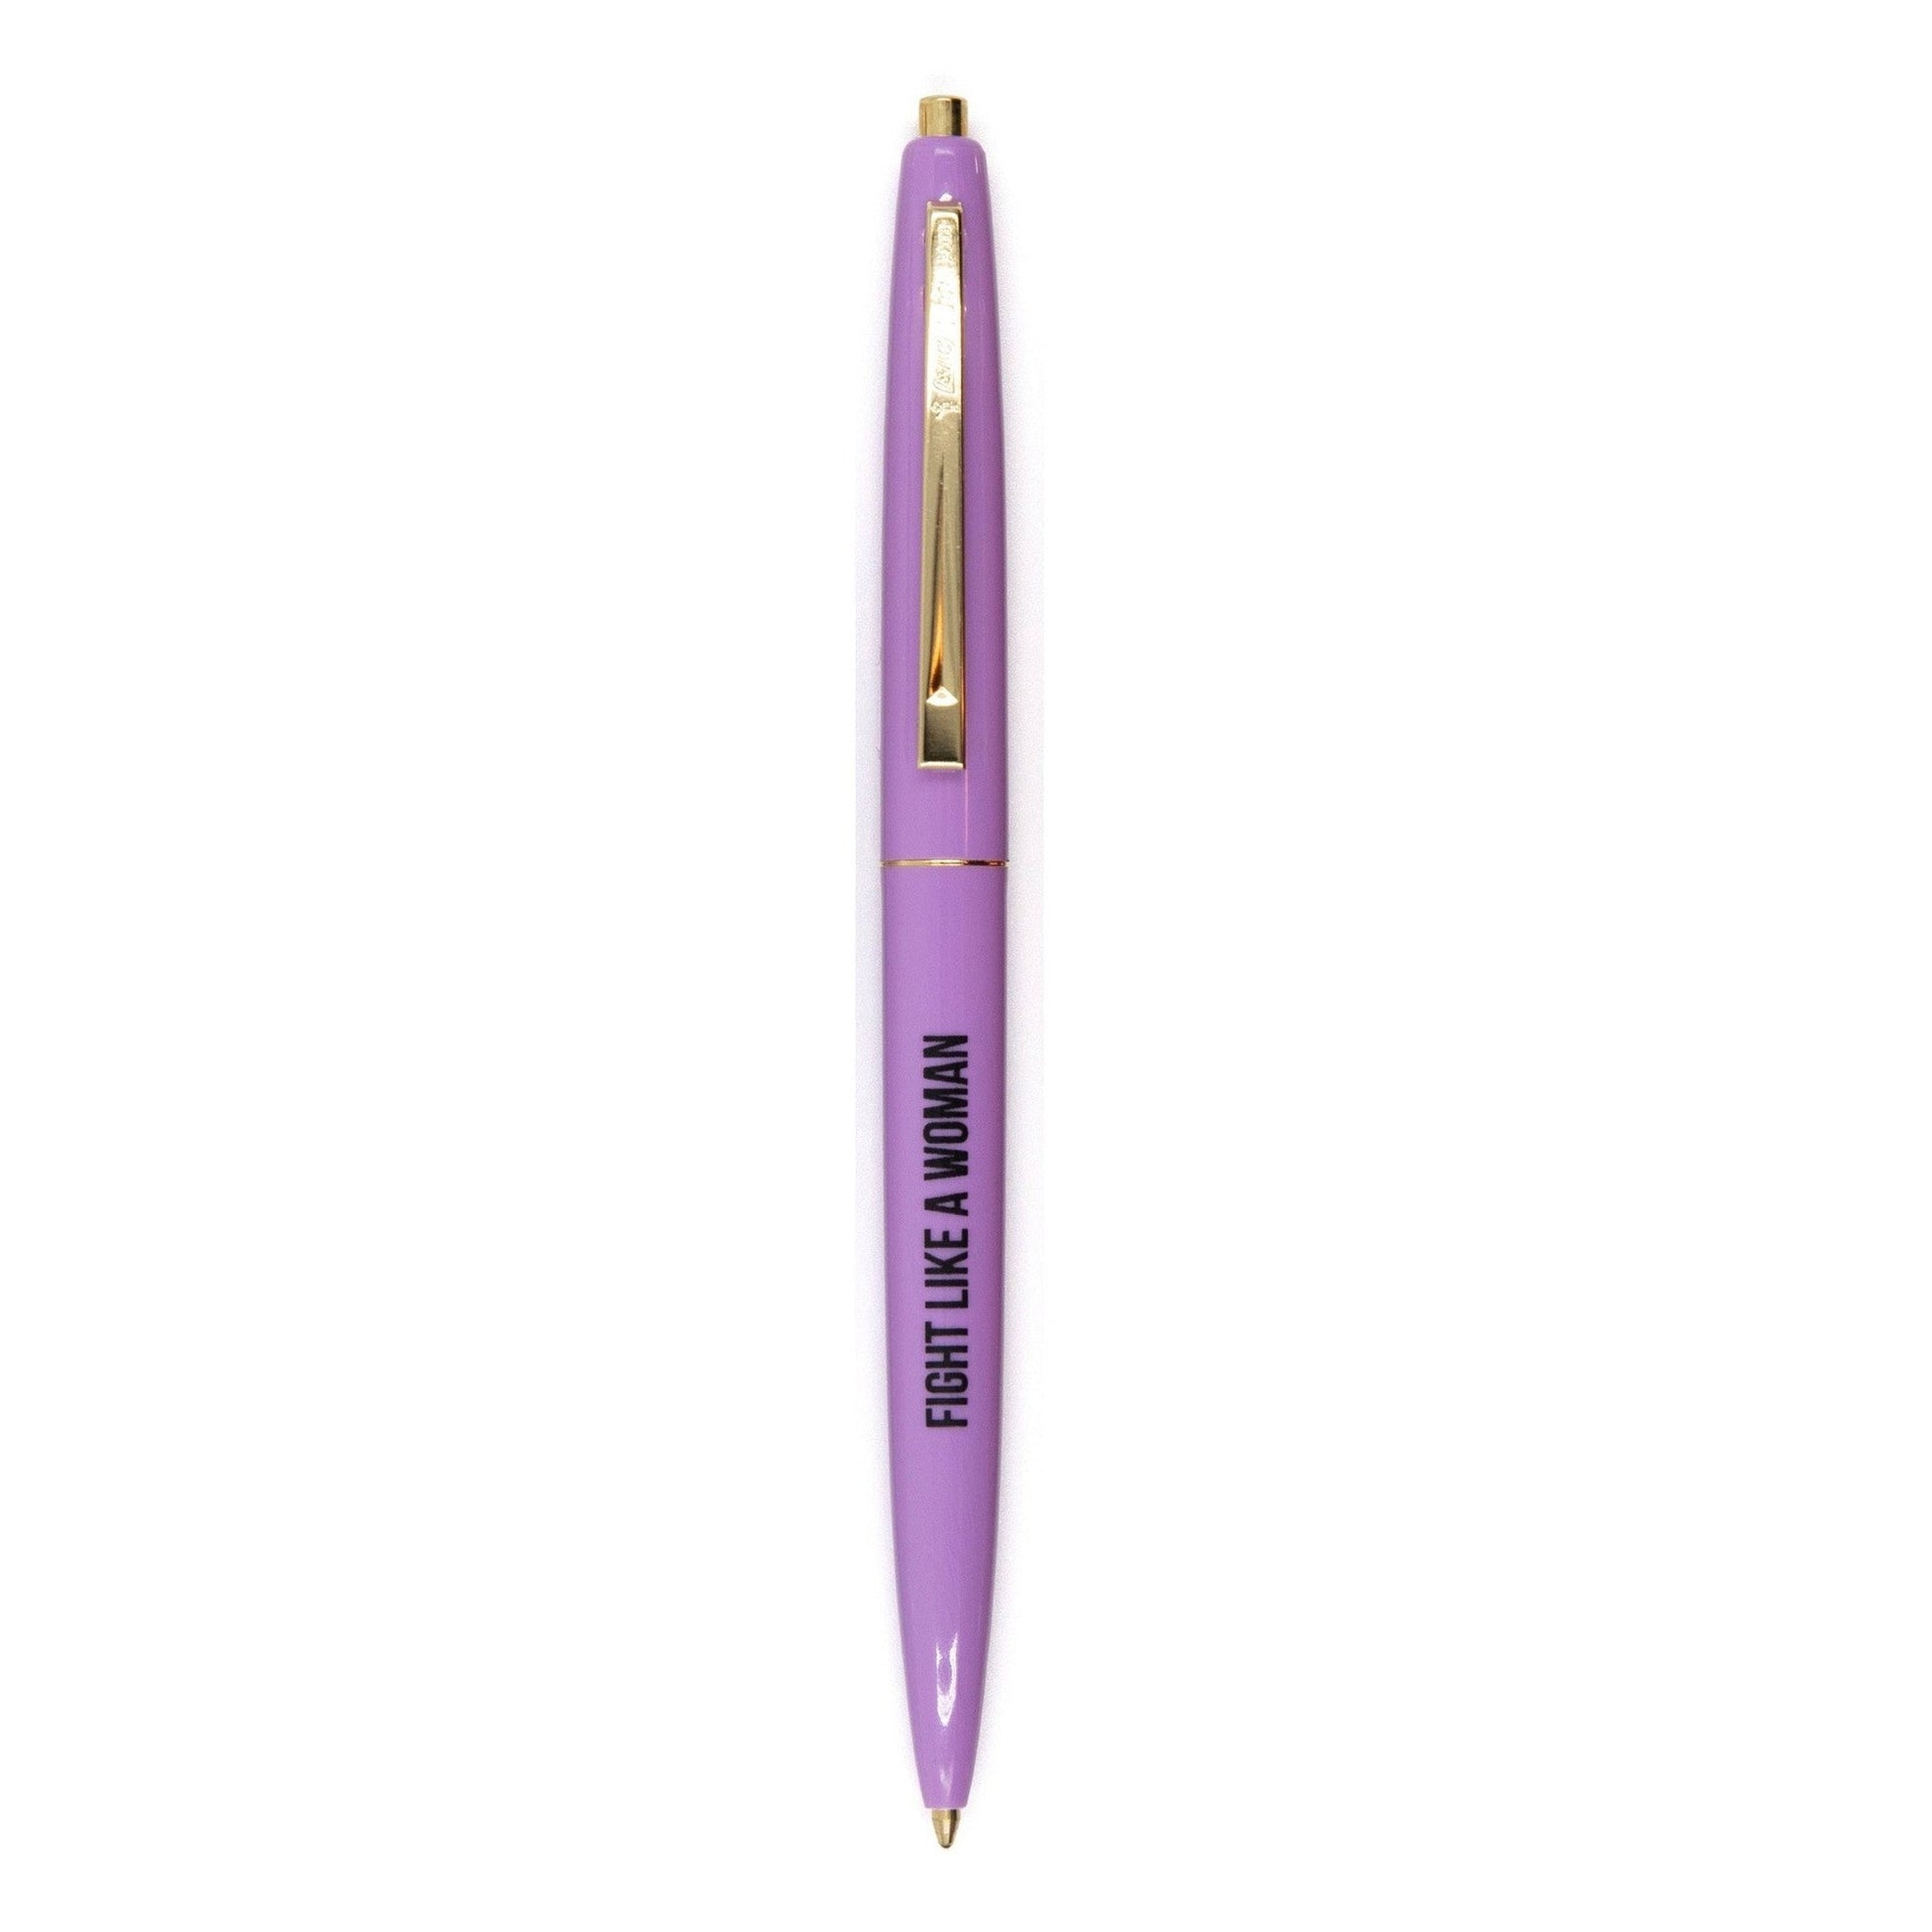 https://shop.getbullish.com/cdn/shop/files/Snarky-Boss-Lady-Pen-Set-in-Brilliant-Multicolor-Set-of-6-Pens-10.jpg?v=1699311629&width=1946